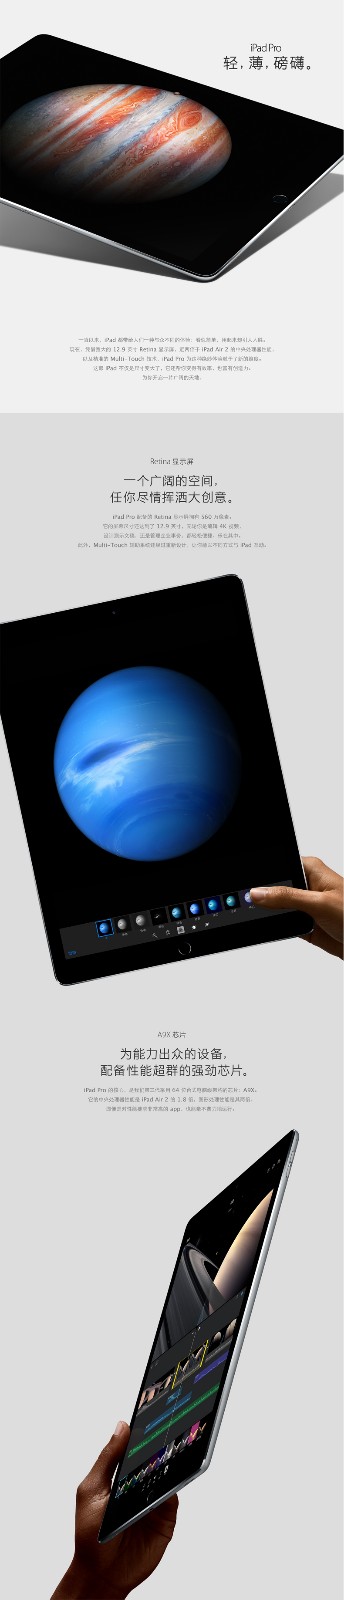 sn-iPad Pro 12.9-1.jpg